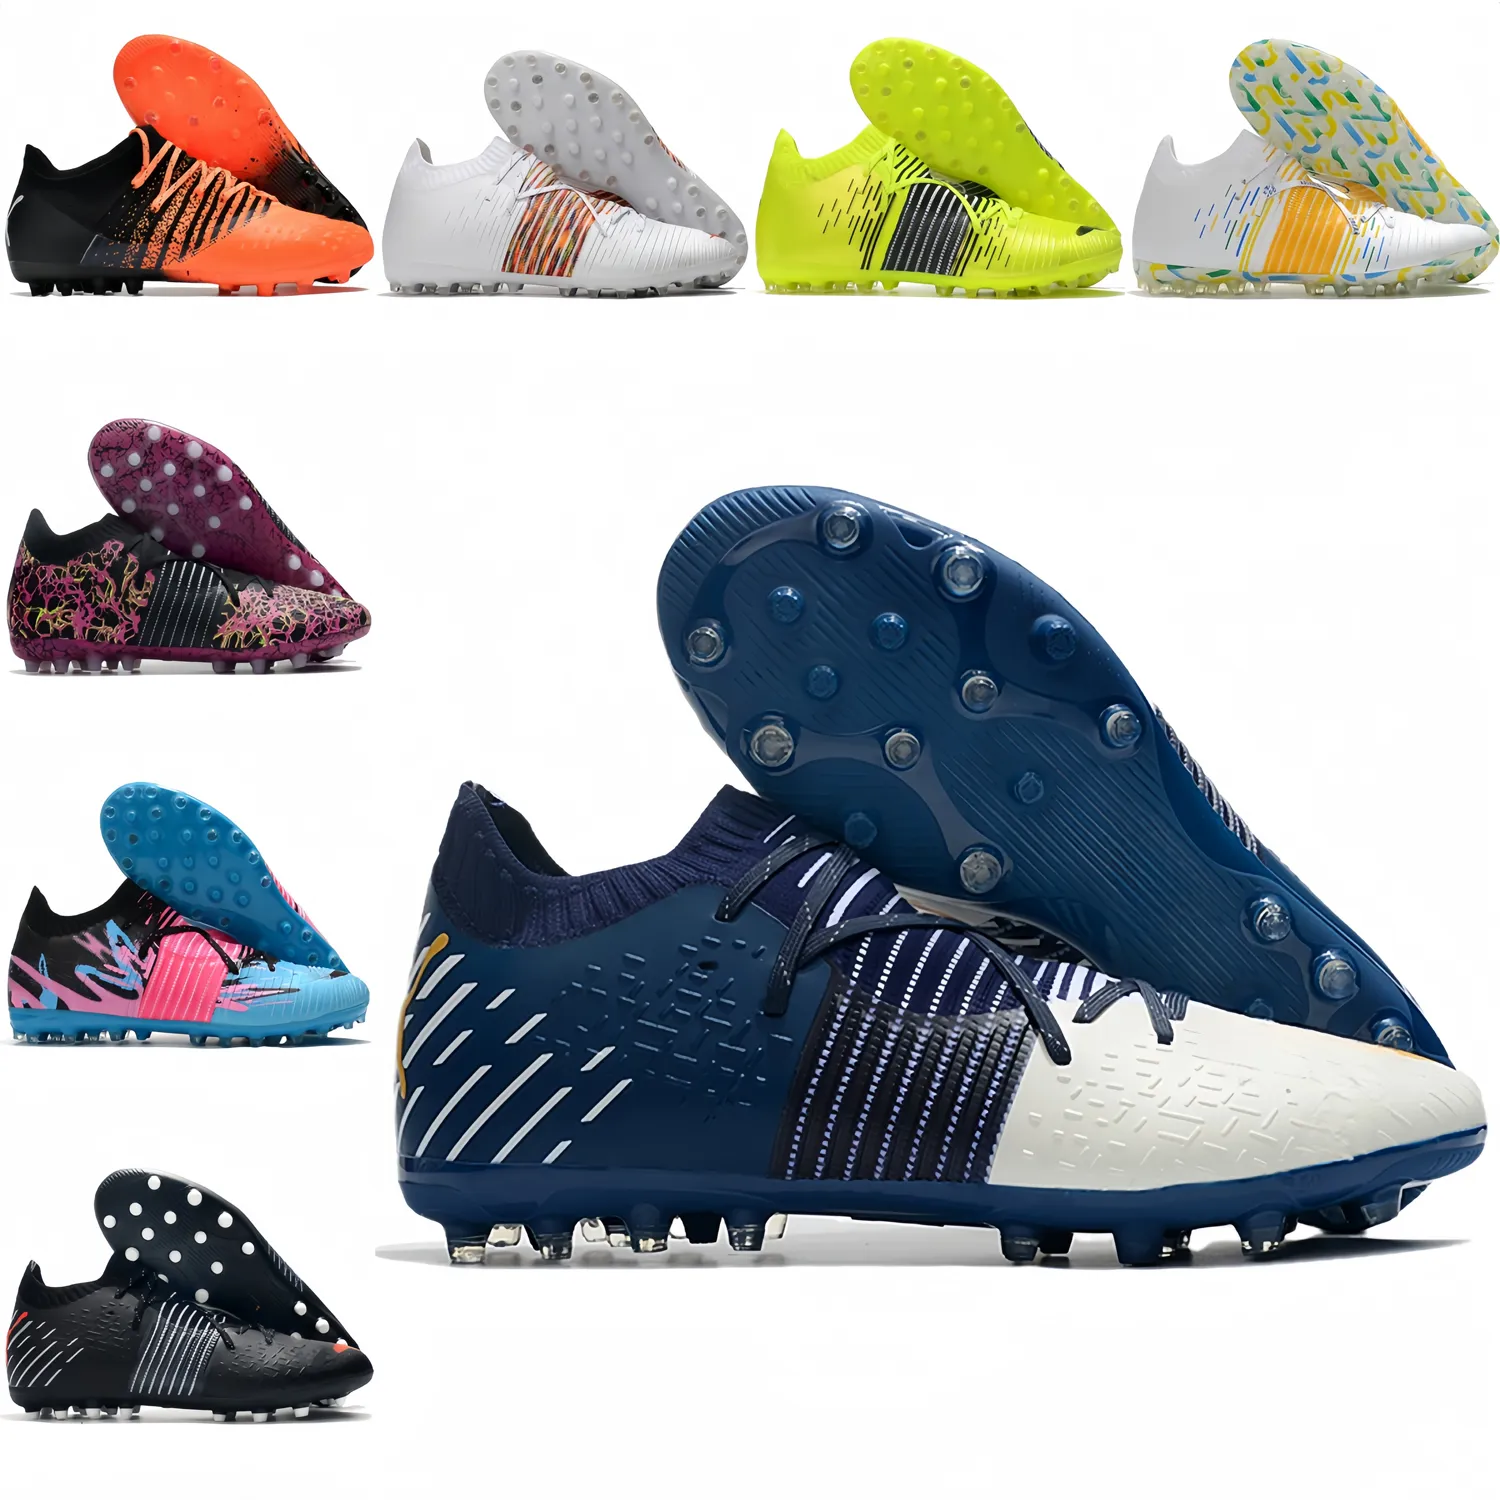 Męskie piłka nożna buty piłkarskie przyszłość Ultimate Institute MG BOOTS CLEATS Skórzane wygodne buty piłkarskie astronauty